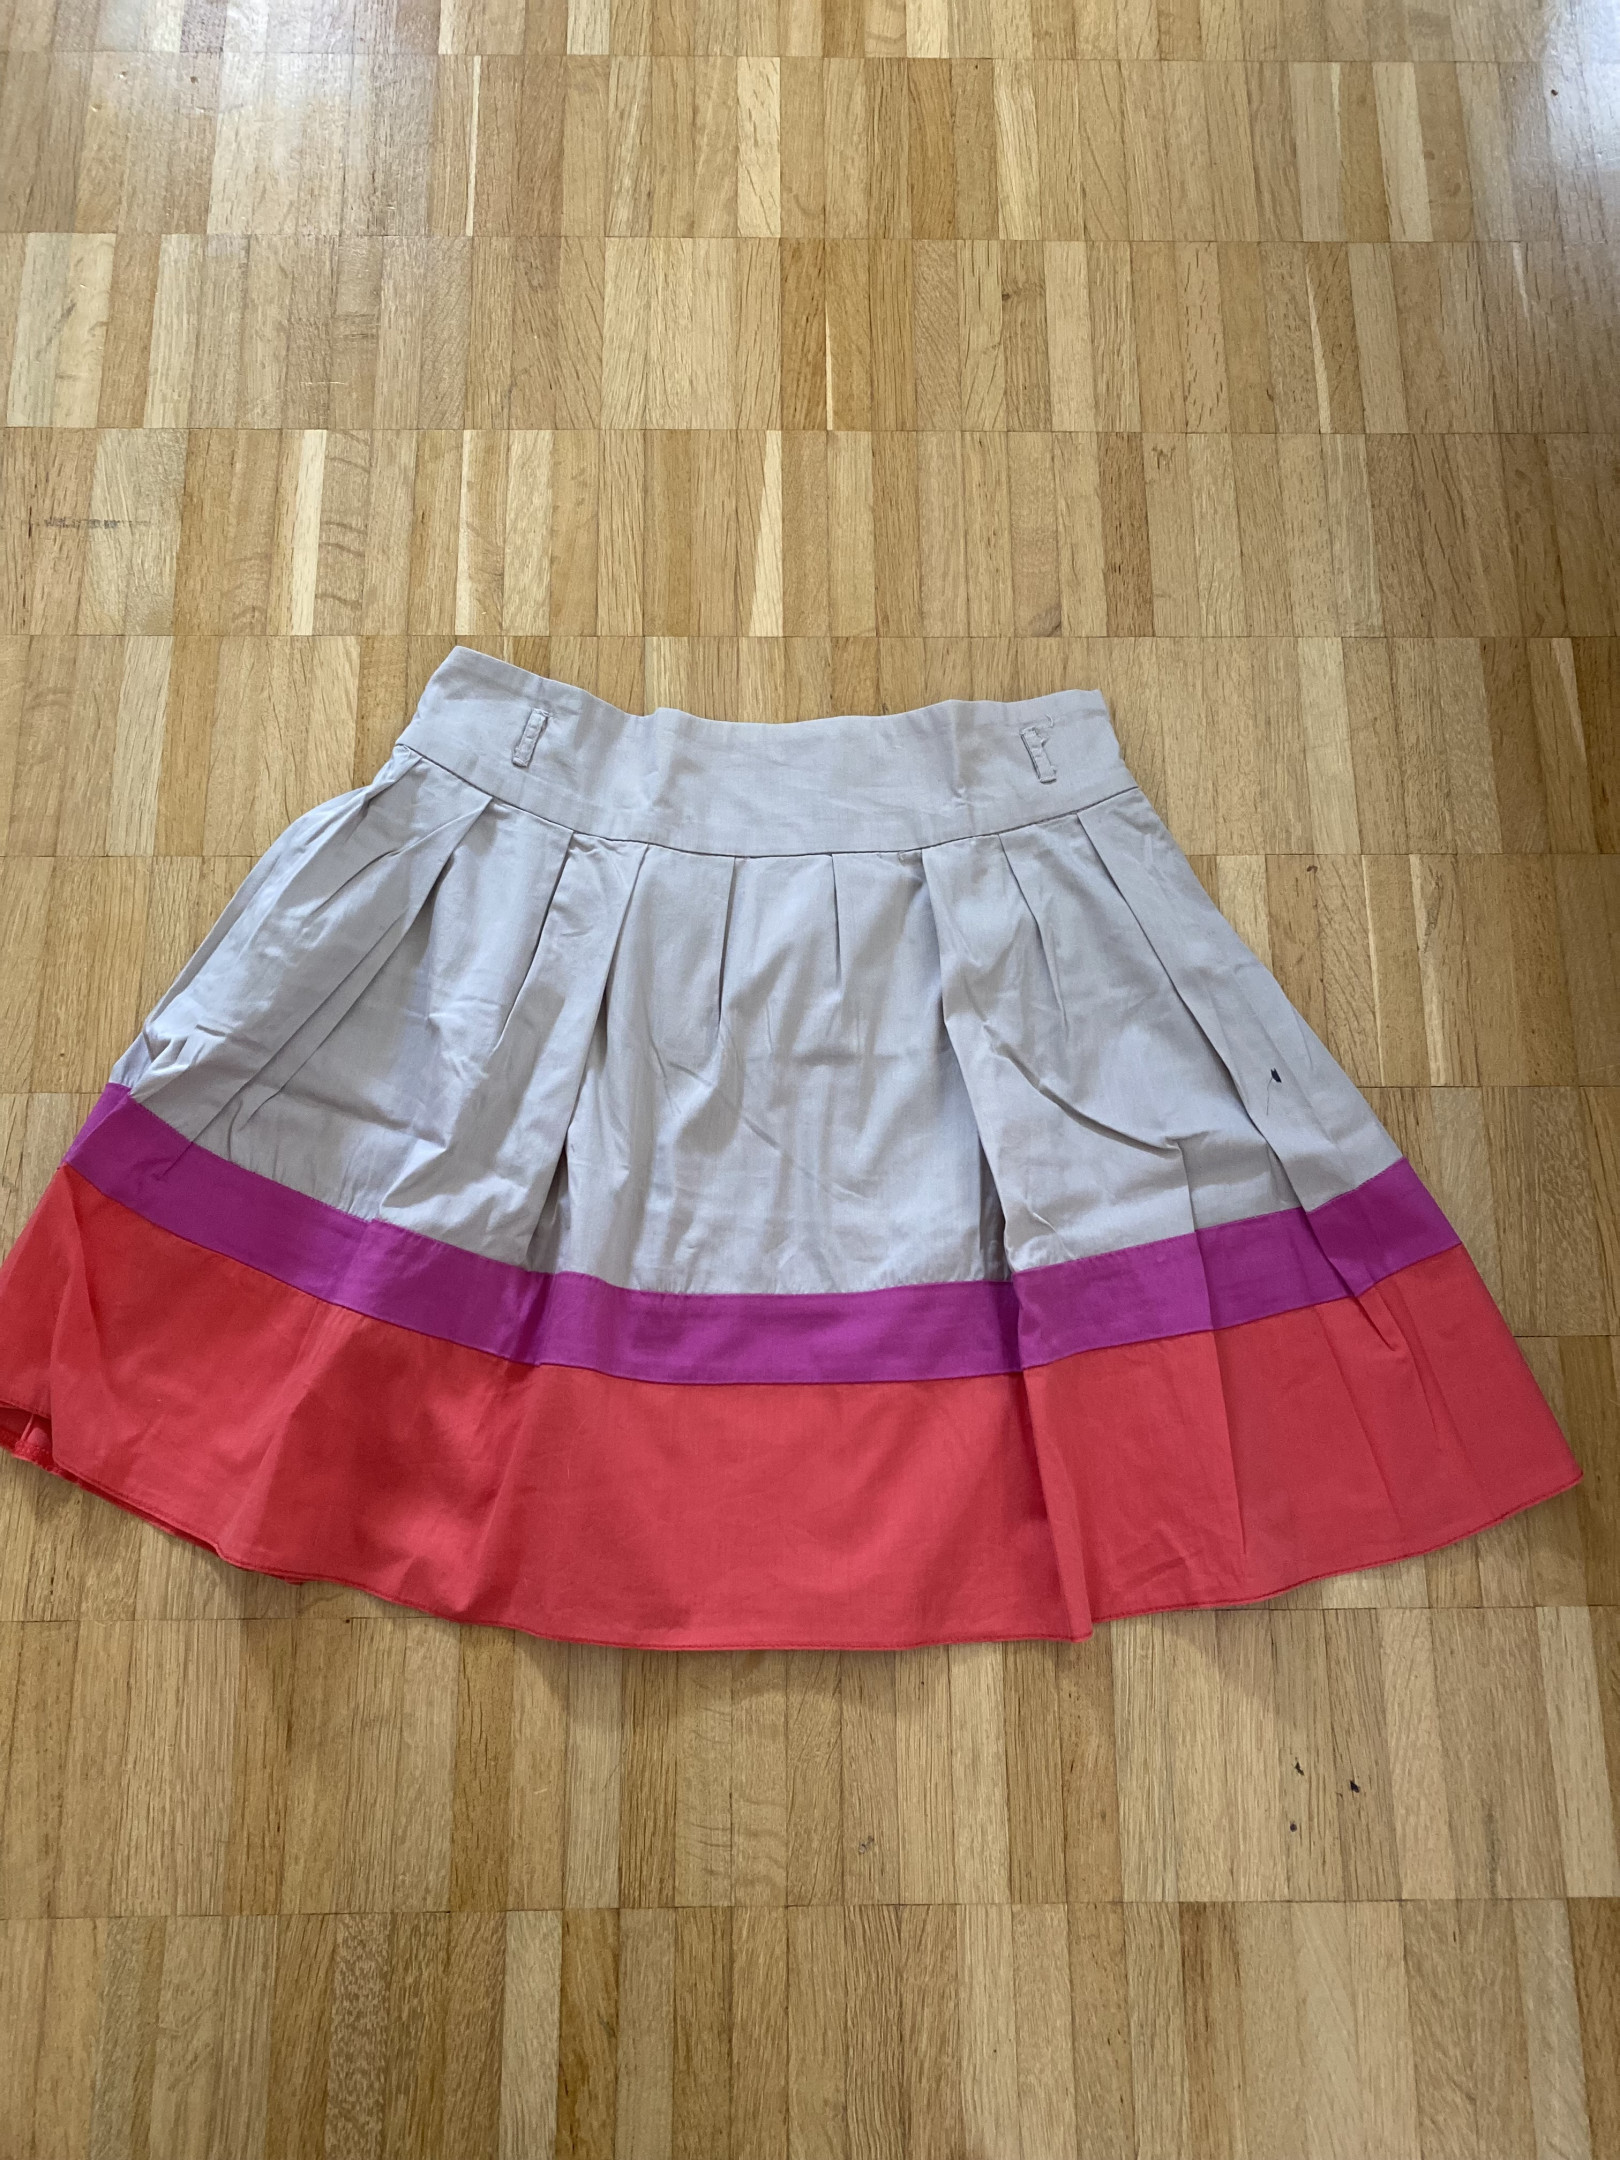 Coloured skirt